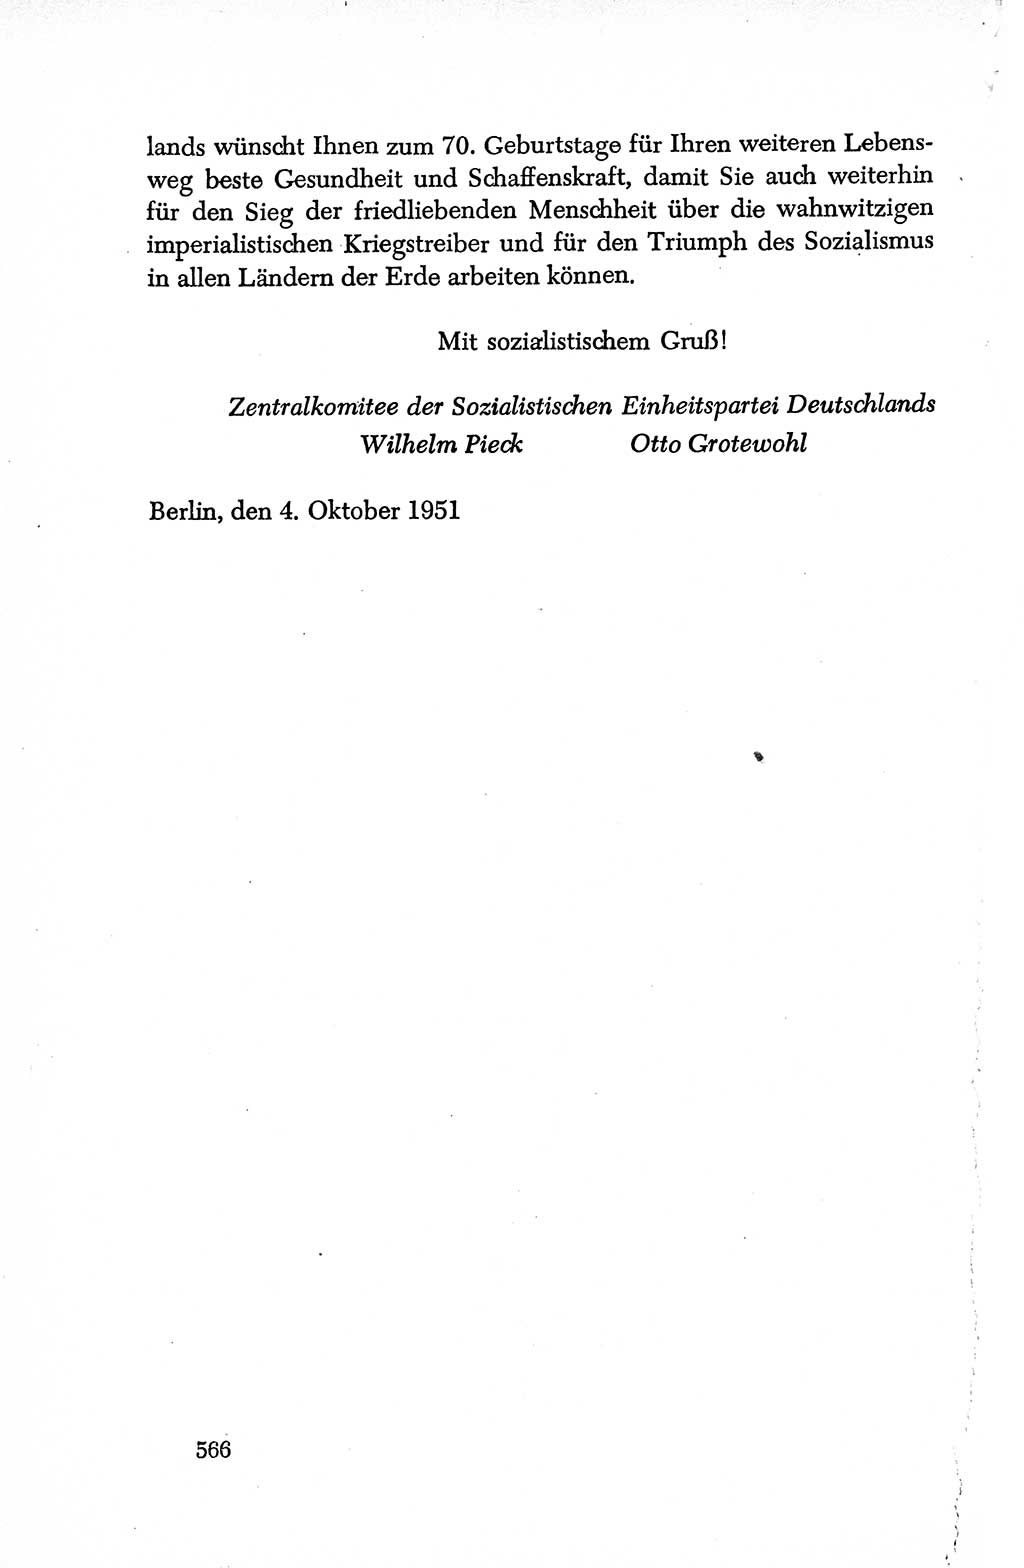 Dokumente der Sozialistischen Einheitspartei Deutschlands (SED) [Deutsche Demokratische Republik (DDR)] 1950-1952, Seite 566 (Dok. SED DDR 1950-1952, S. 566)